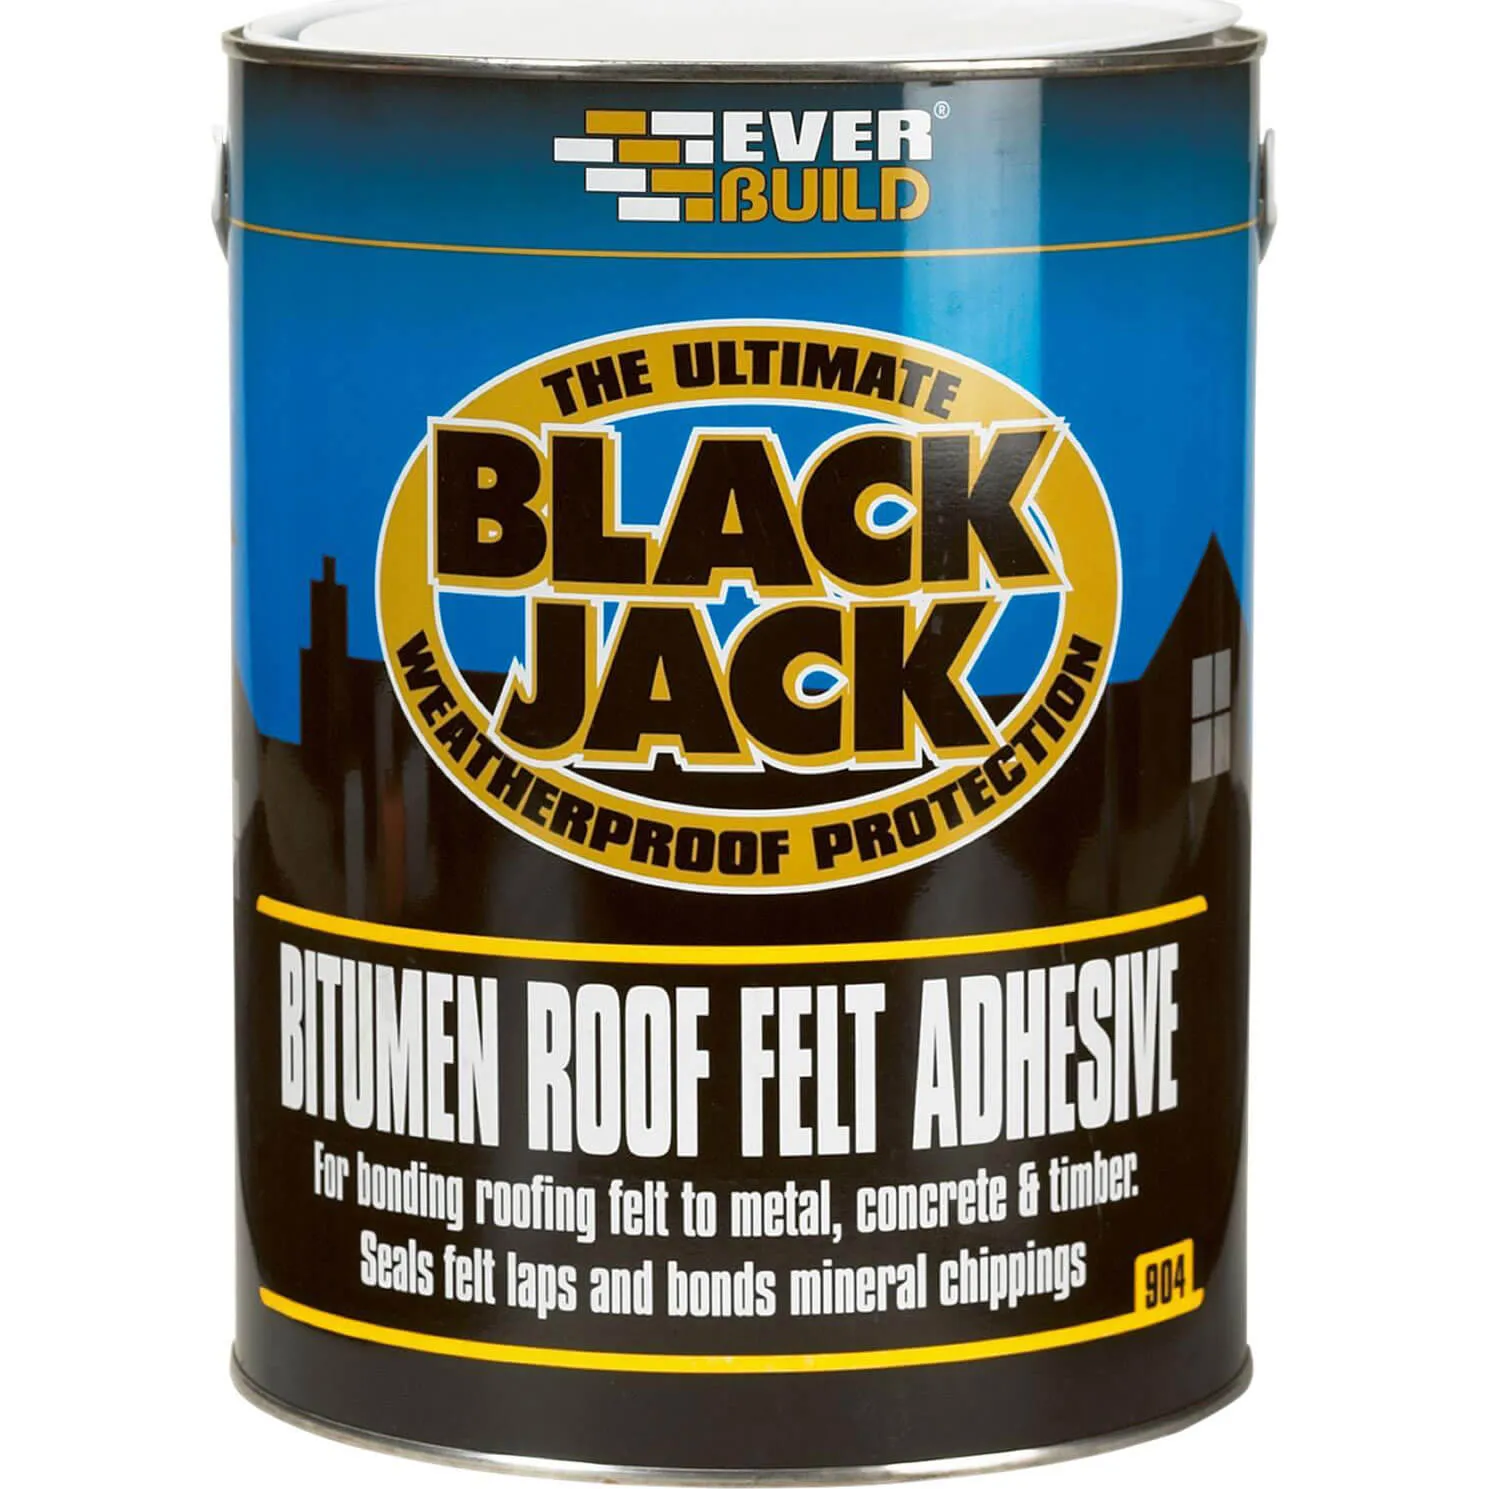 Everbuild Black Jack 904 Bitumen Roofing Felt Adhesive - 5l